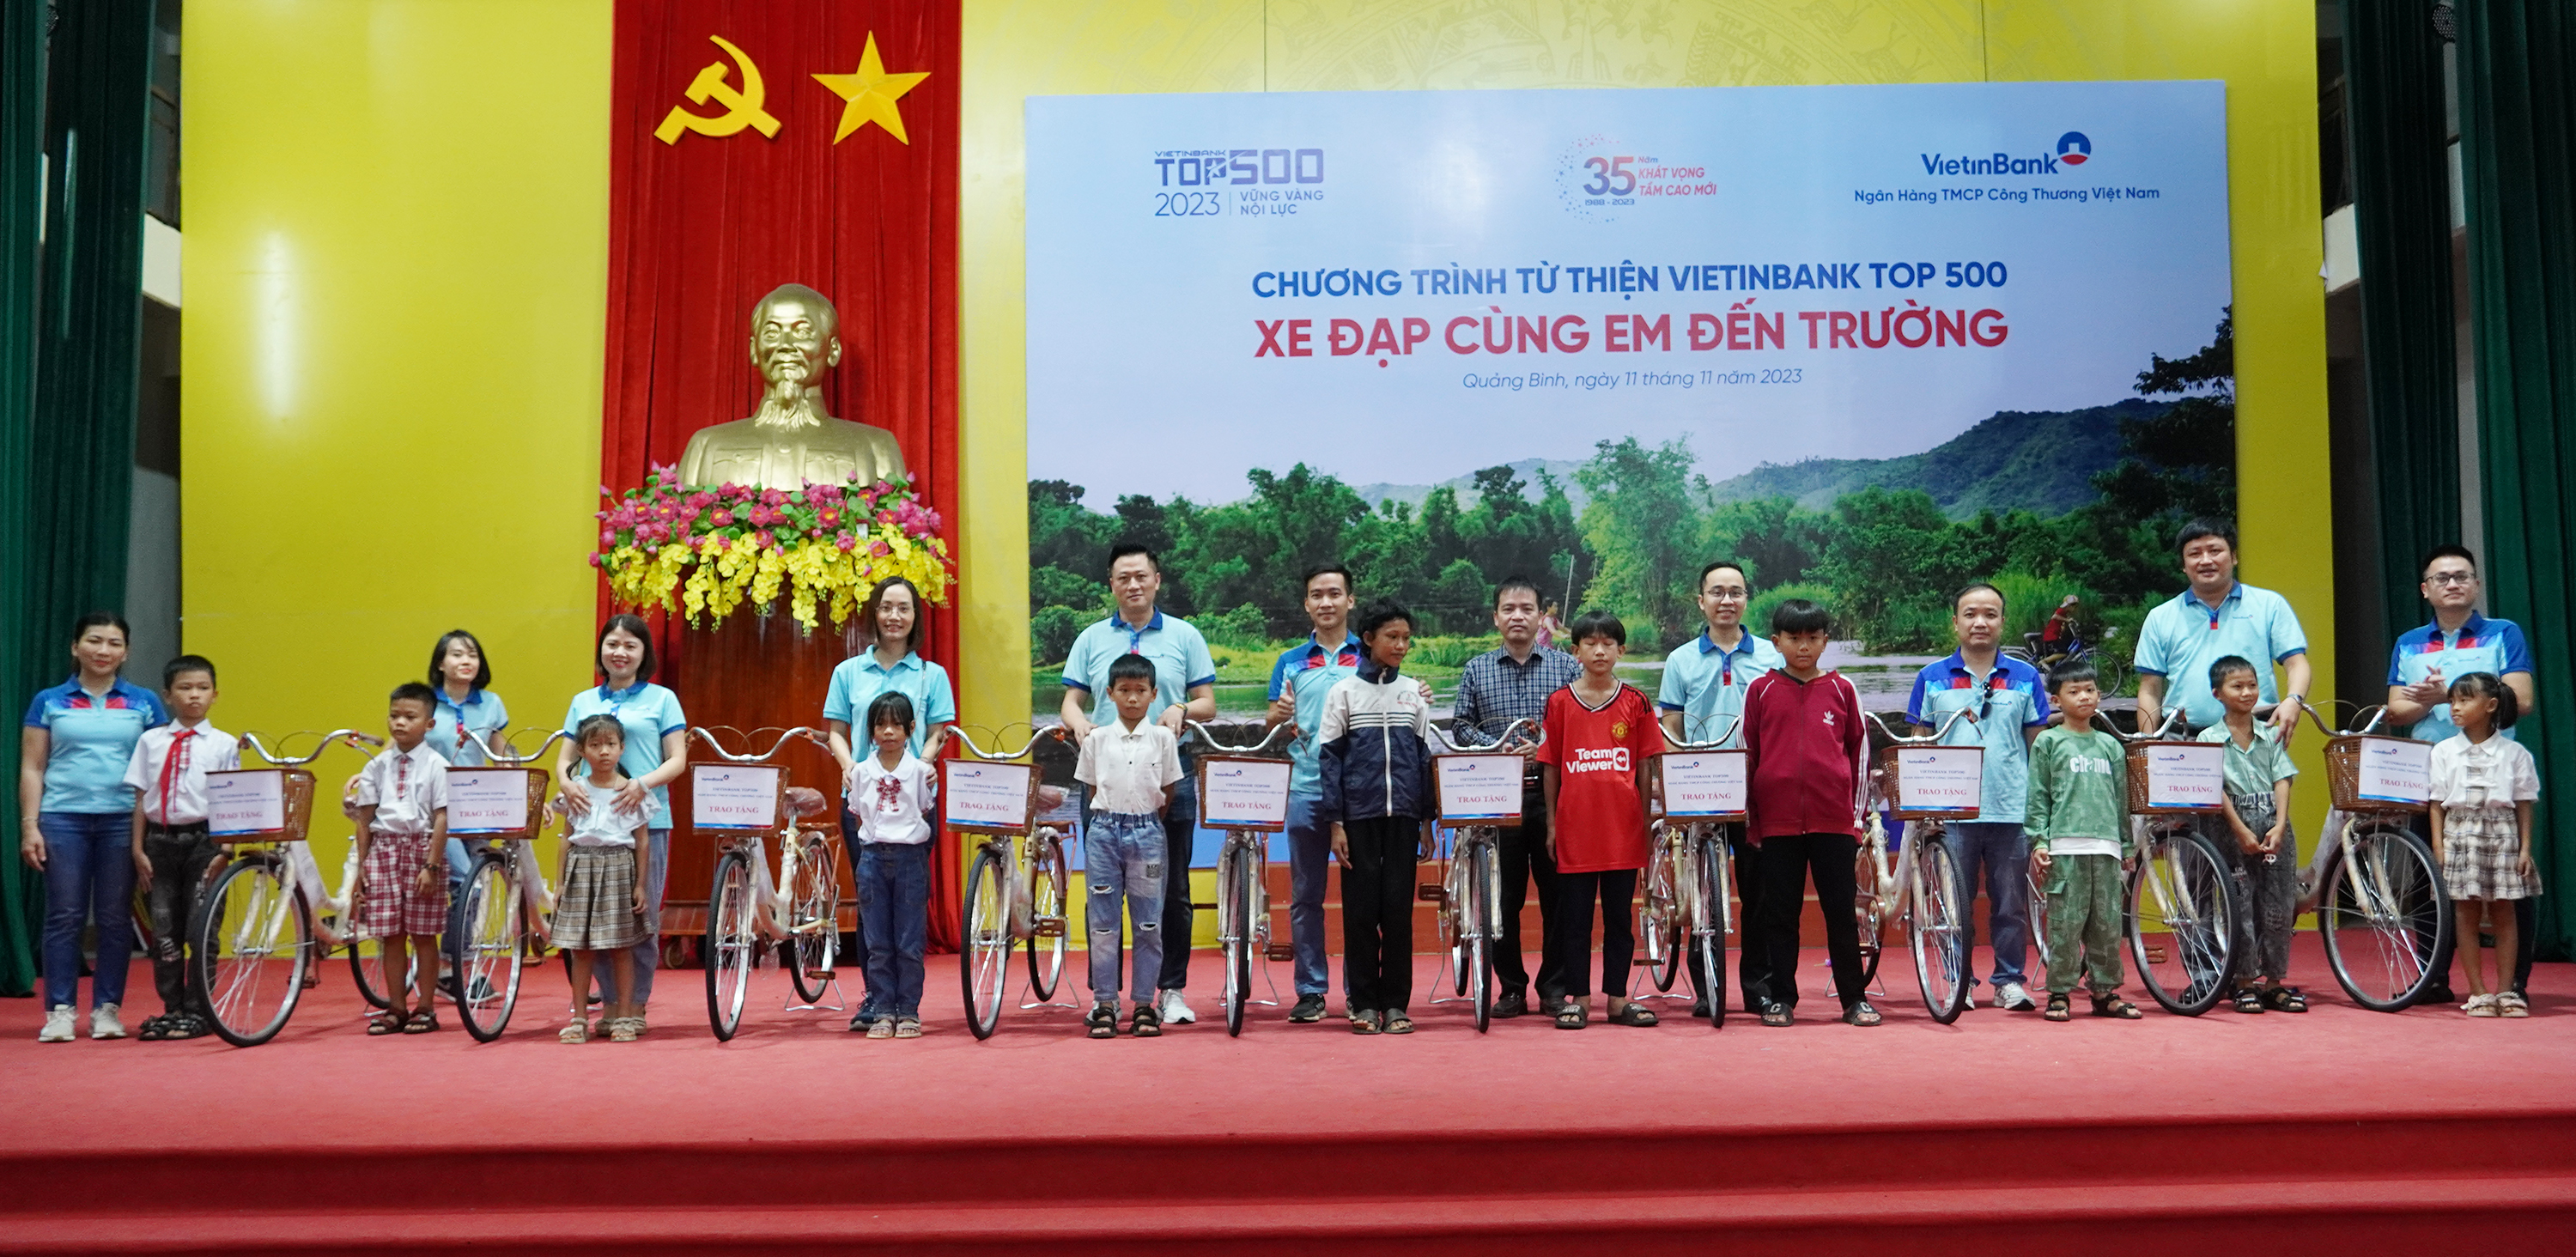 Chương trình từ thiện VietinBank top 500 xe đạp cùng em đến trường